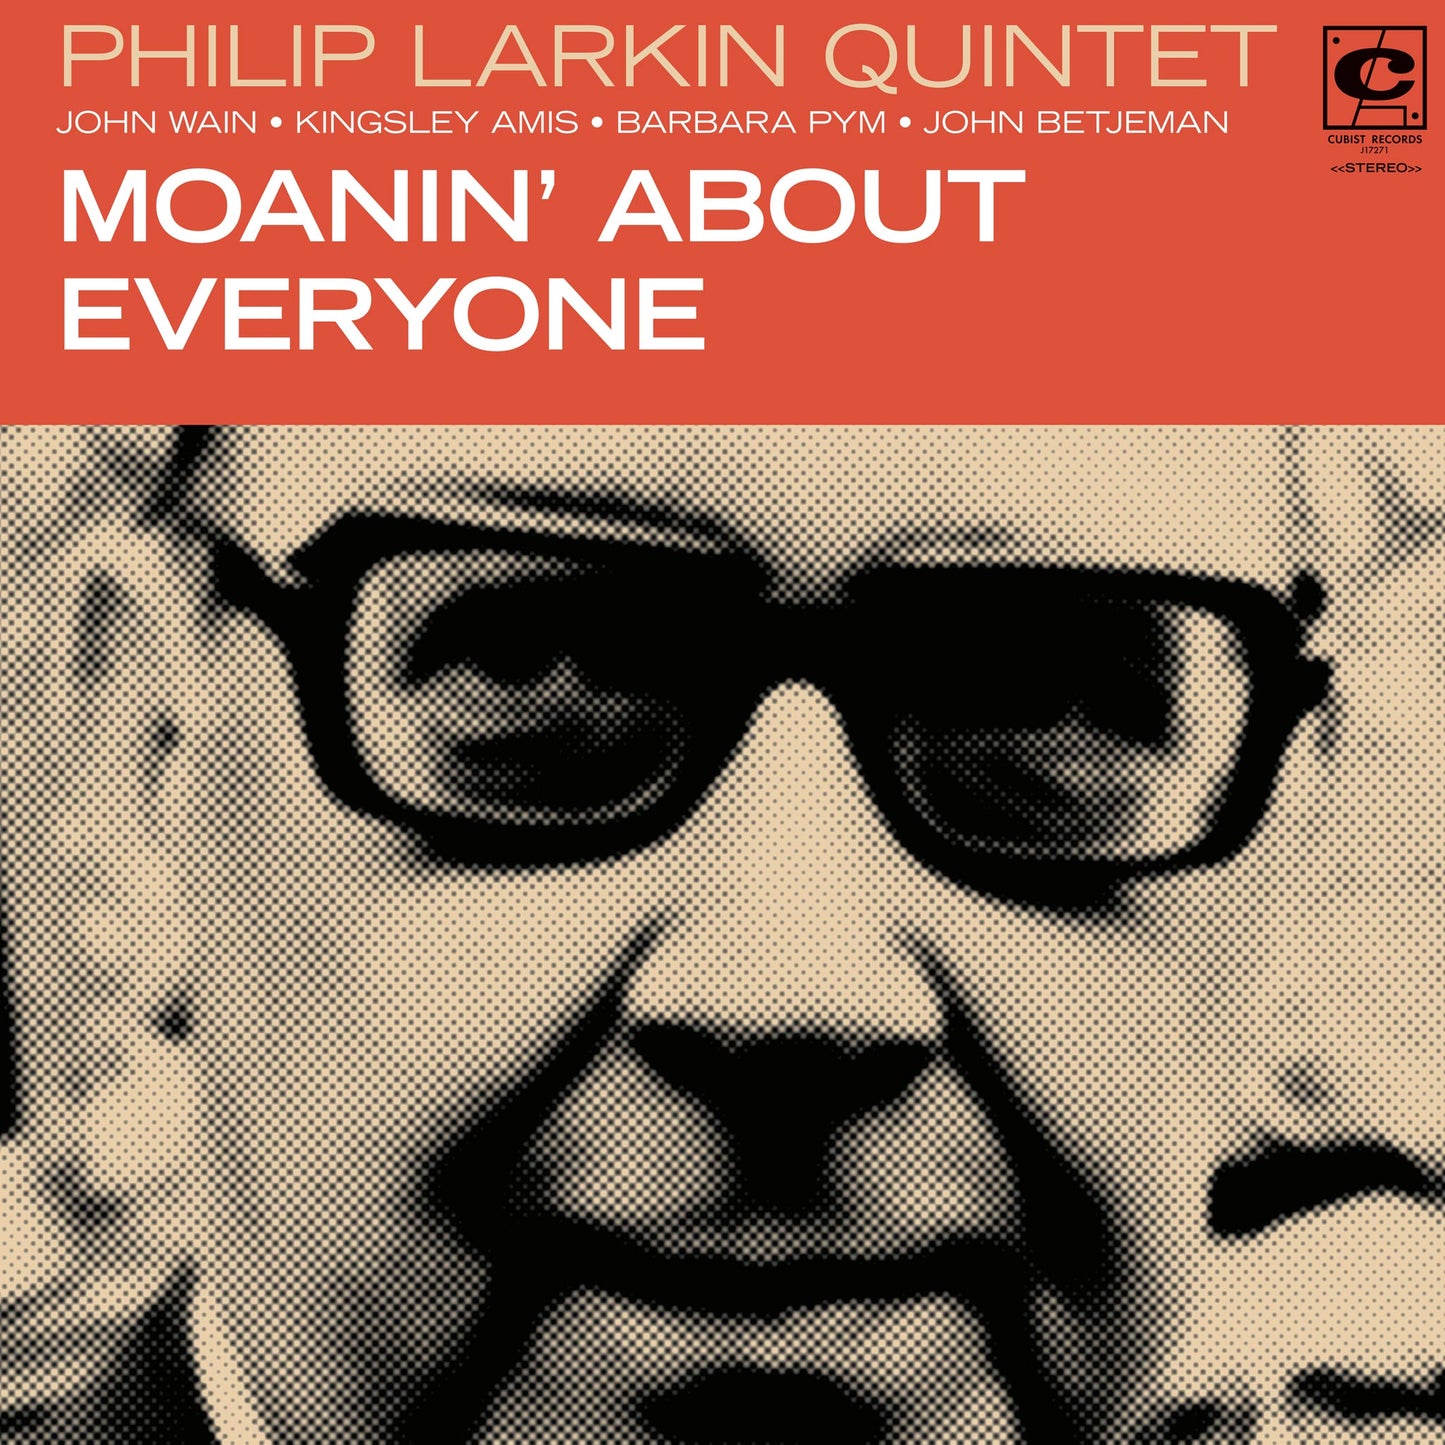 Philip Larkin Quintet Jazz Album Cover Poster Print